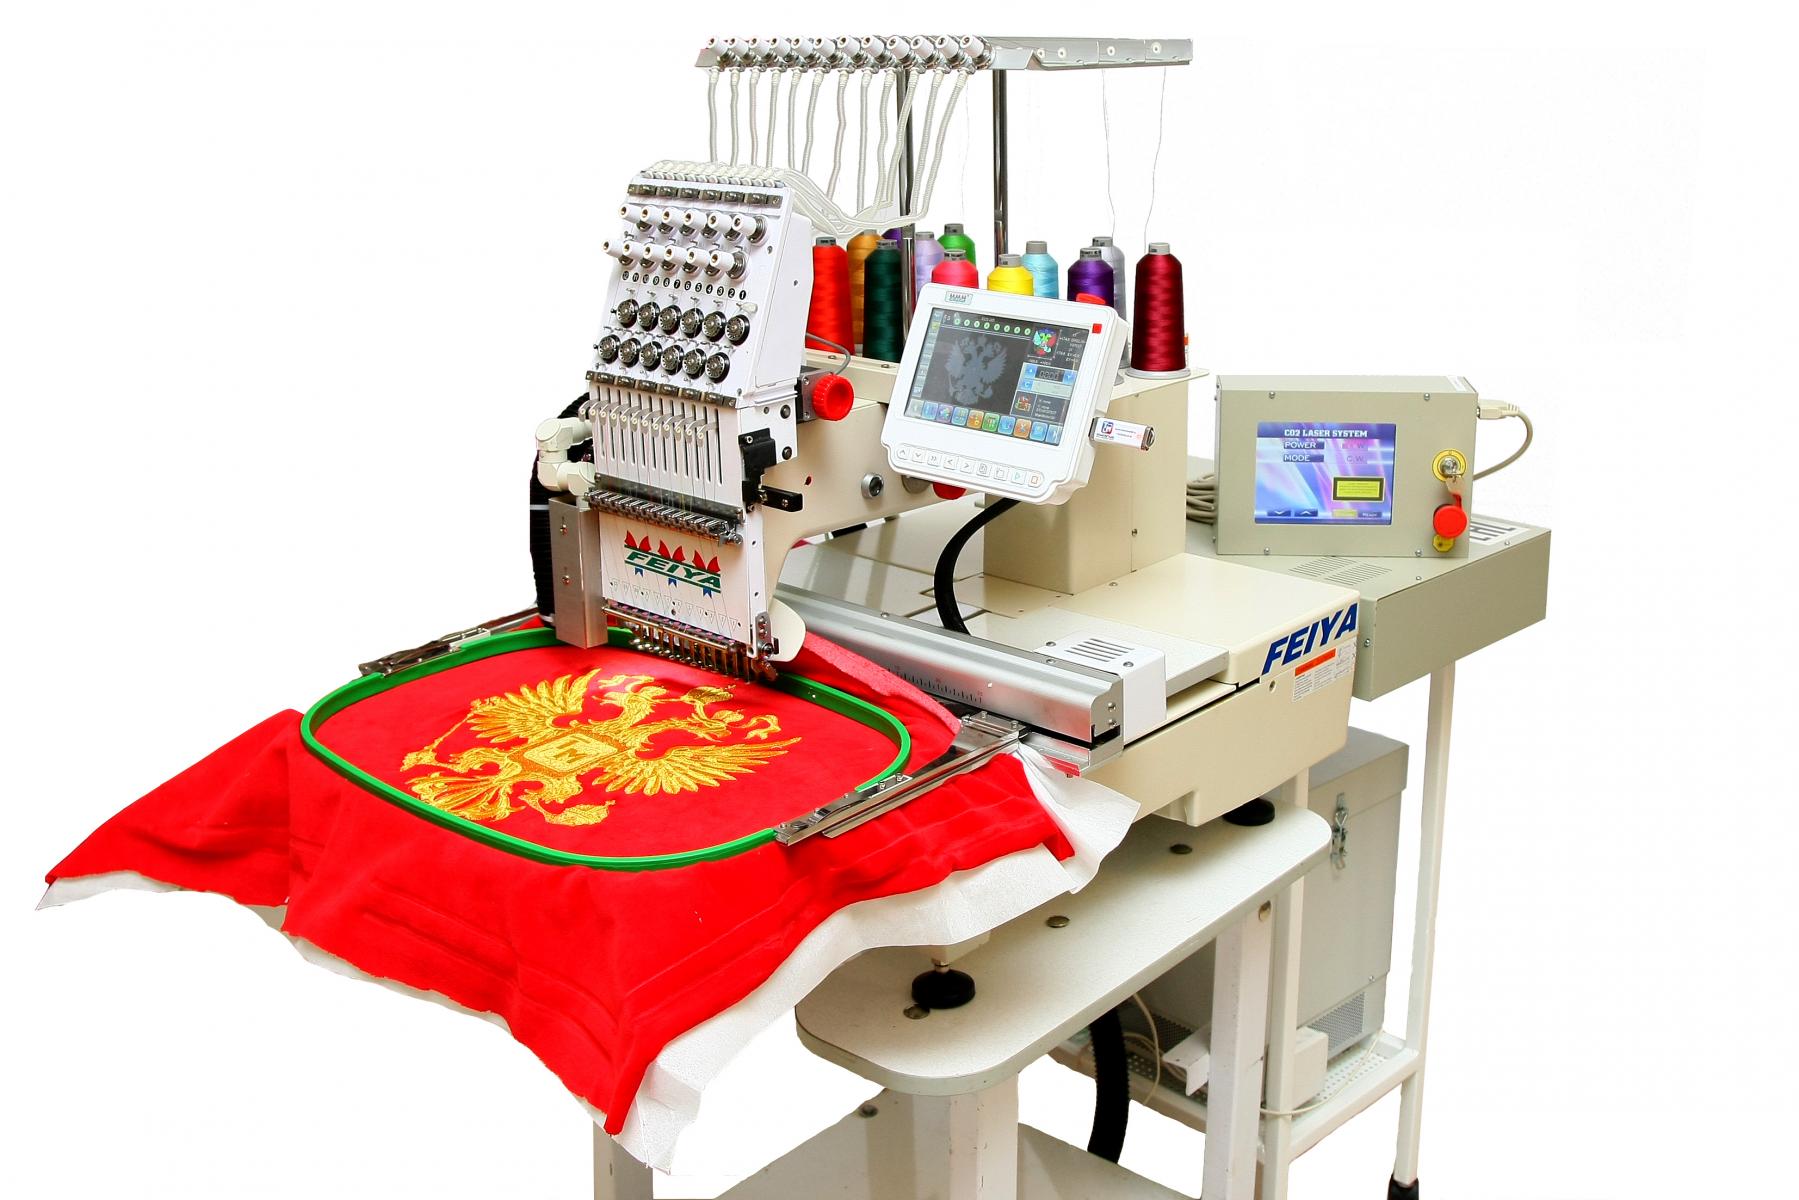 Изготовление швейного оборудования. Вышивальная машина Jack ctf1201. Вышивальная машина Sunsure SS 1201-CS. Вышивальная машина Промышленная Sunsure. Feiya 1202 вышивальная машина.